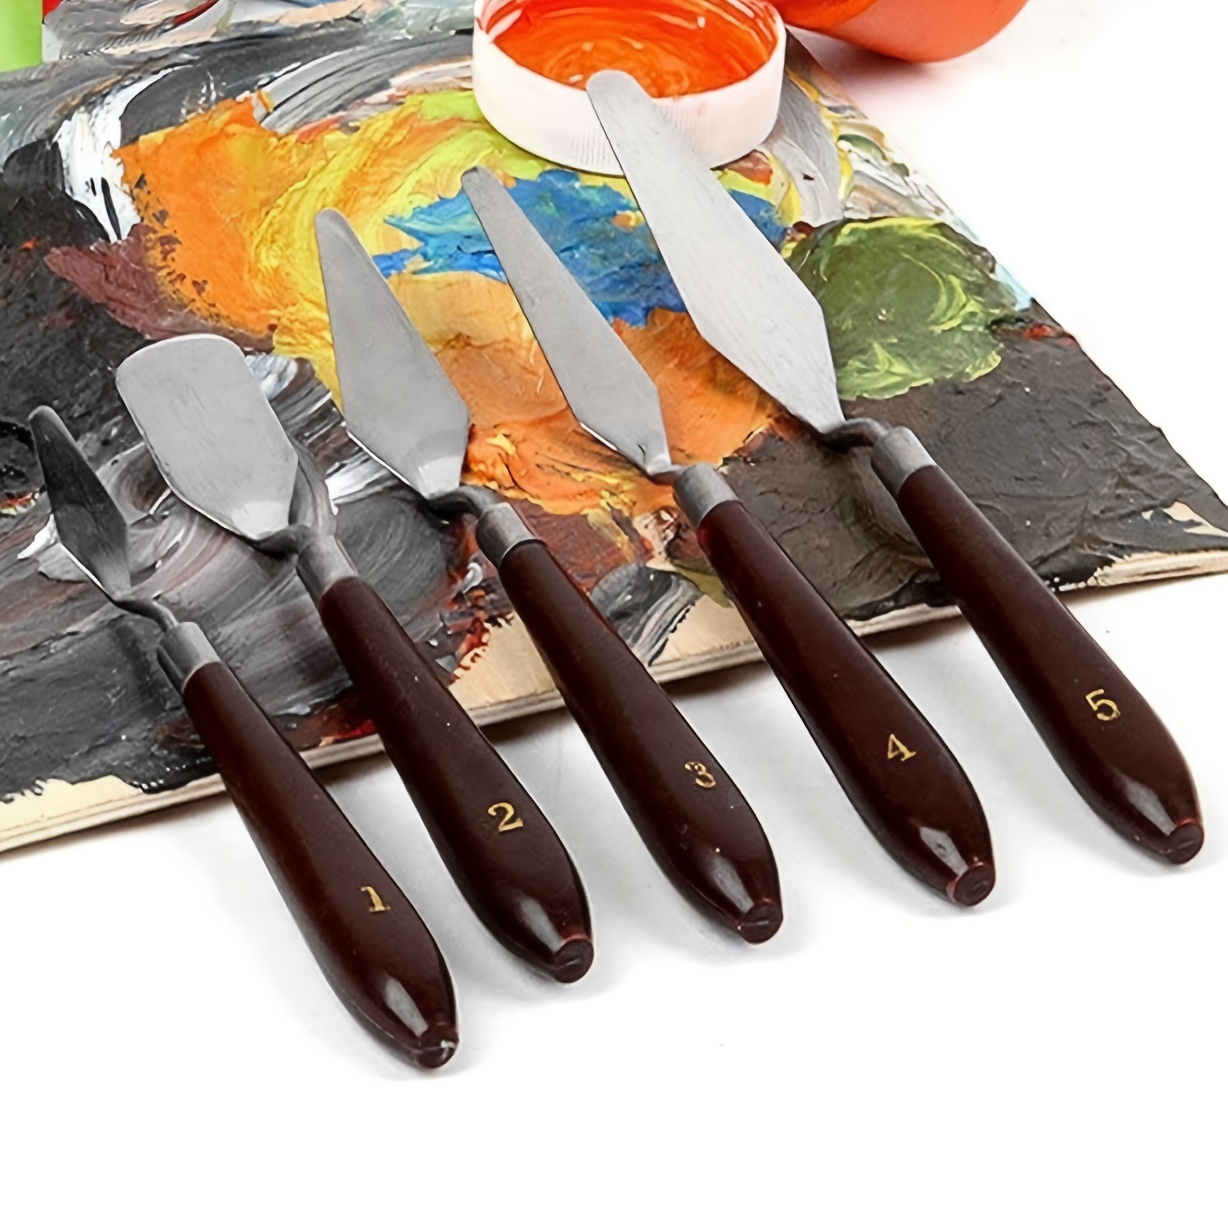 Stainless Steel Oil Painting Knife Artist Spatula Art Tools - Temu